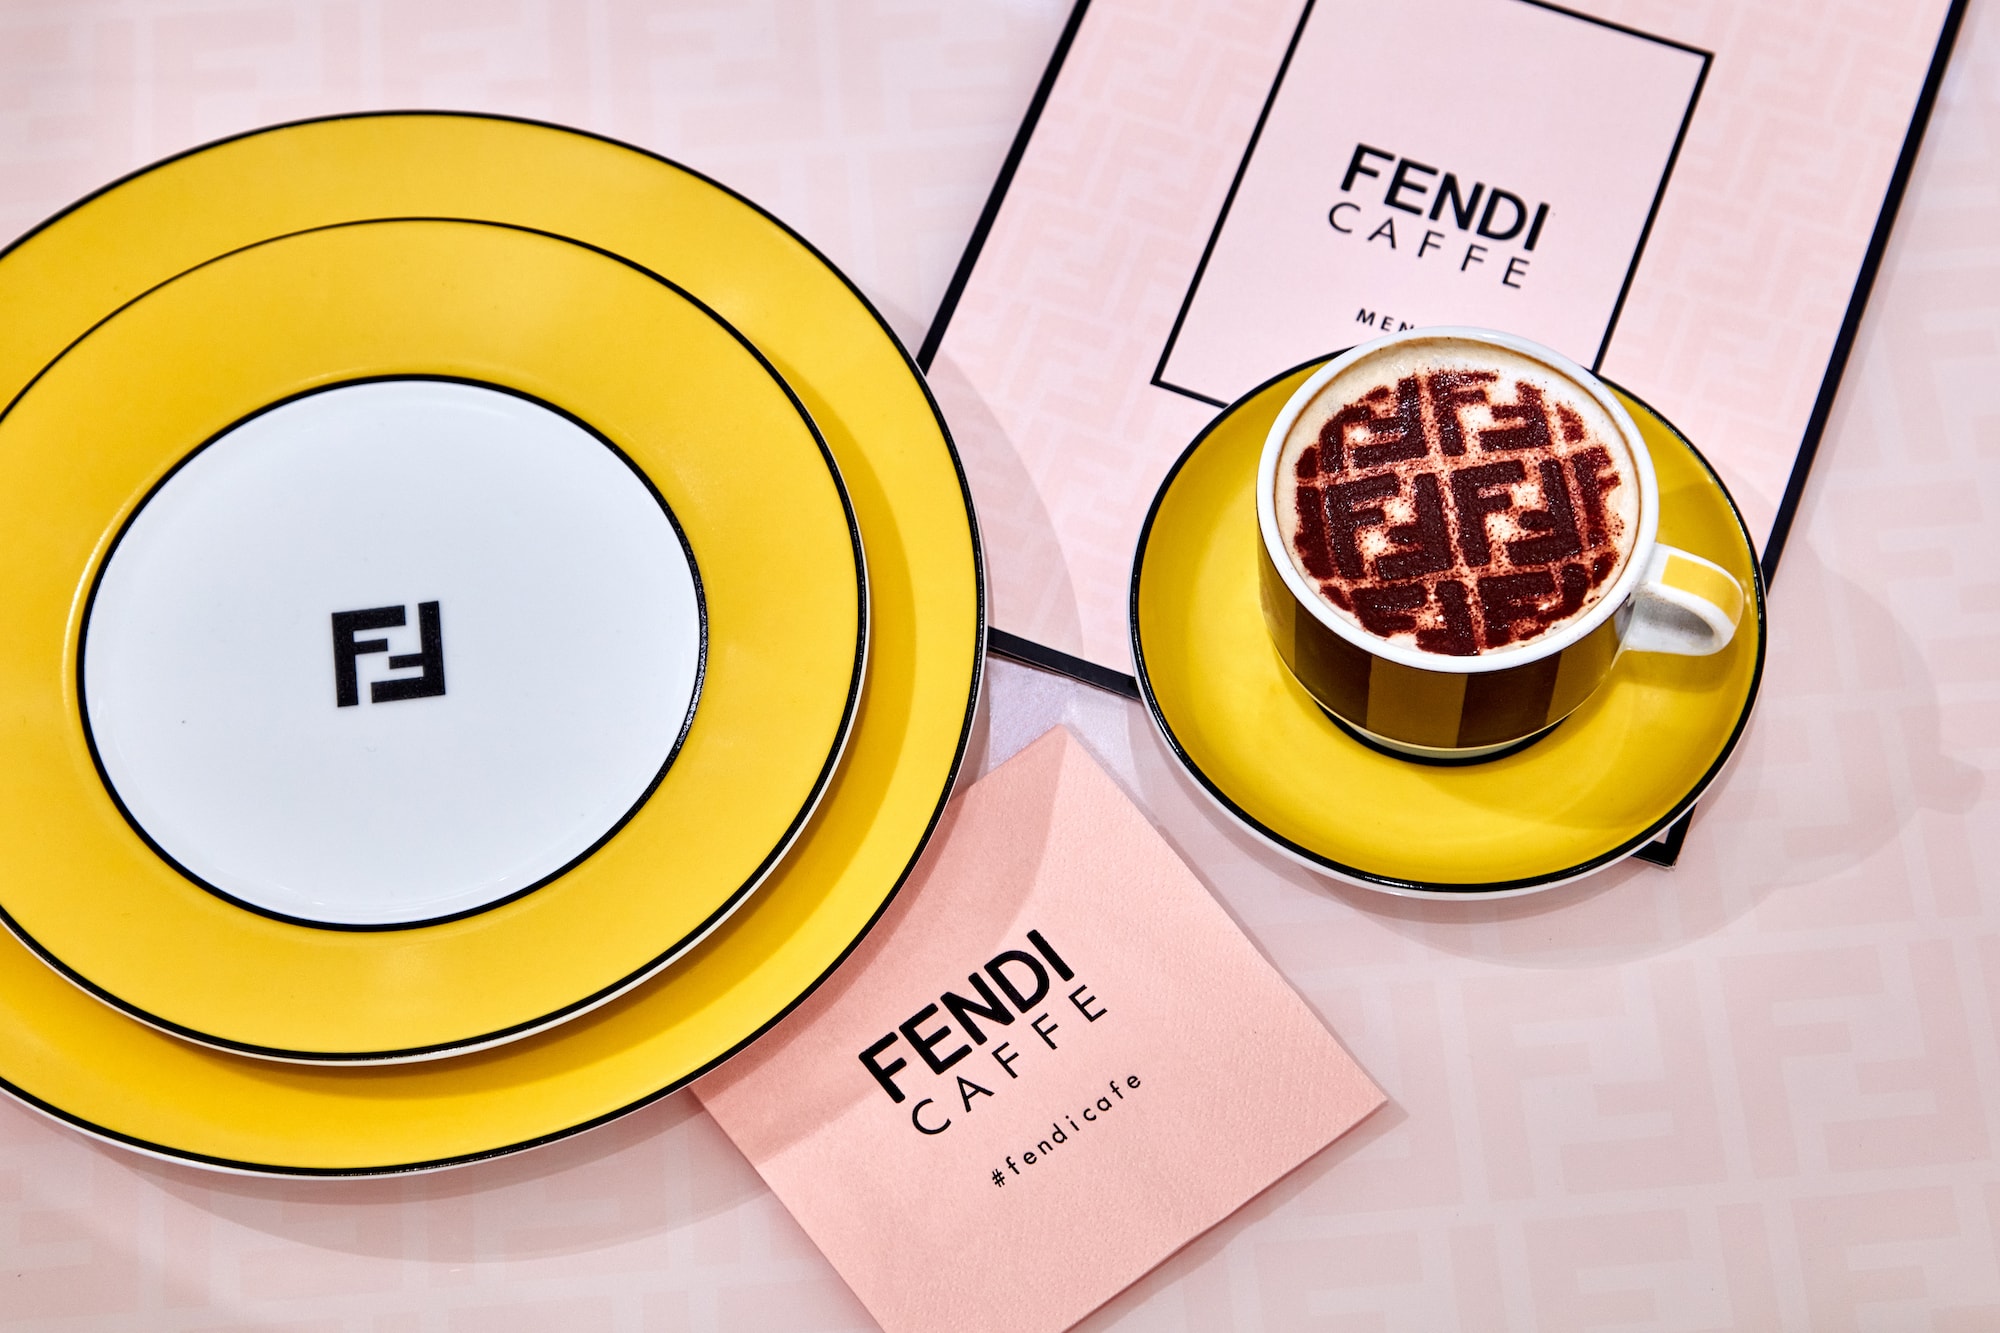 Fendi opens fun pop-up in Manhattan